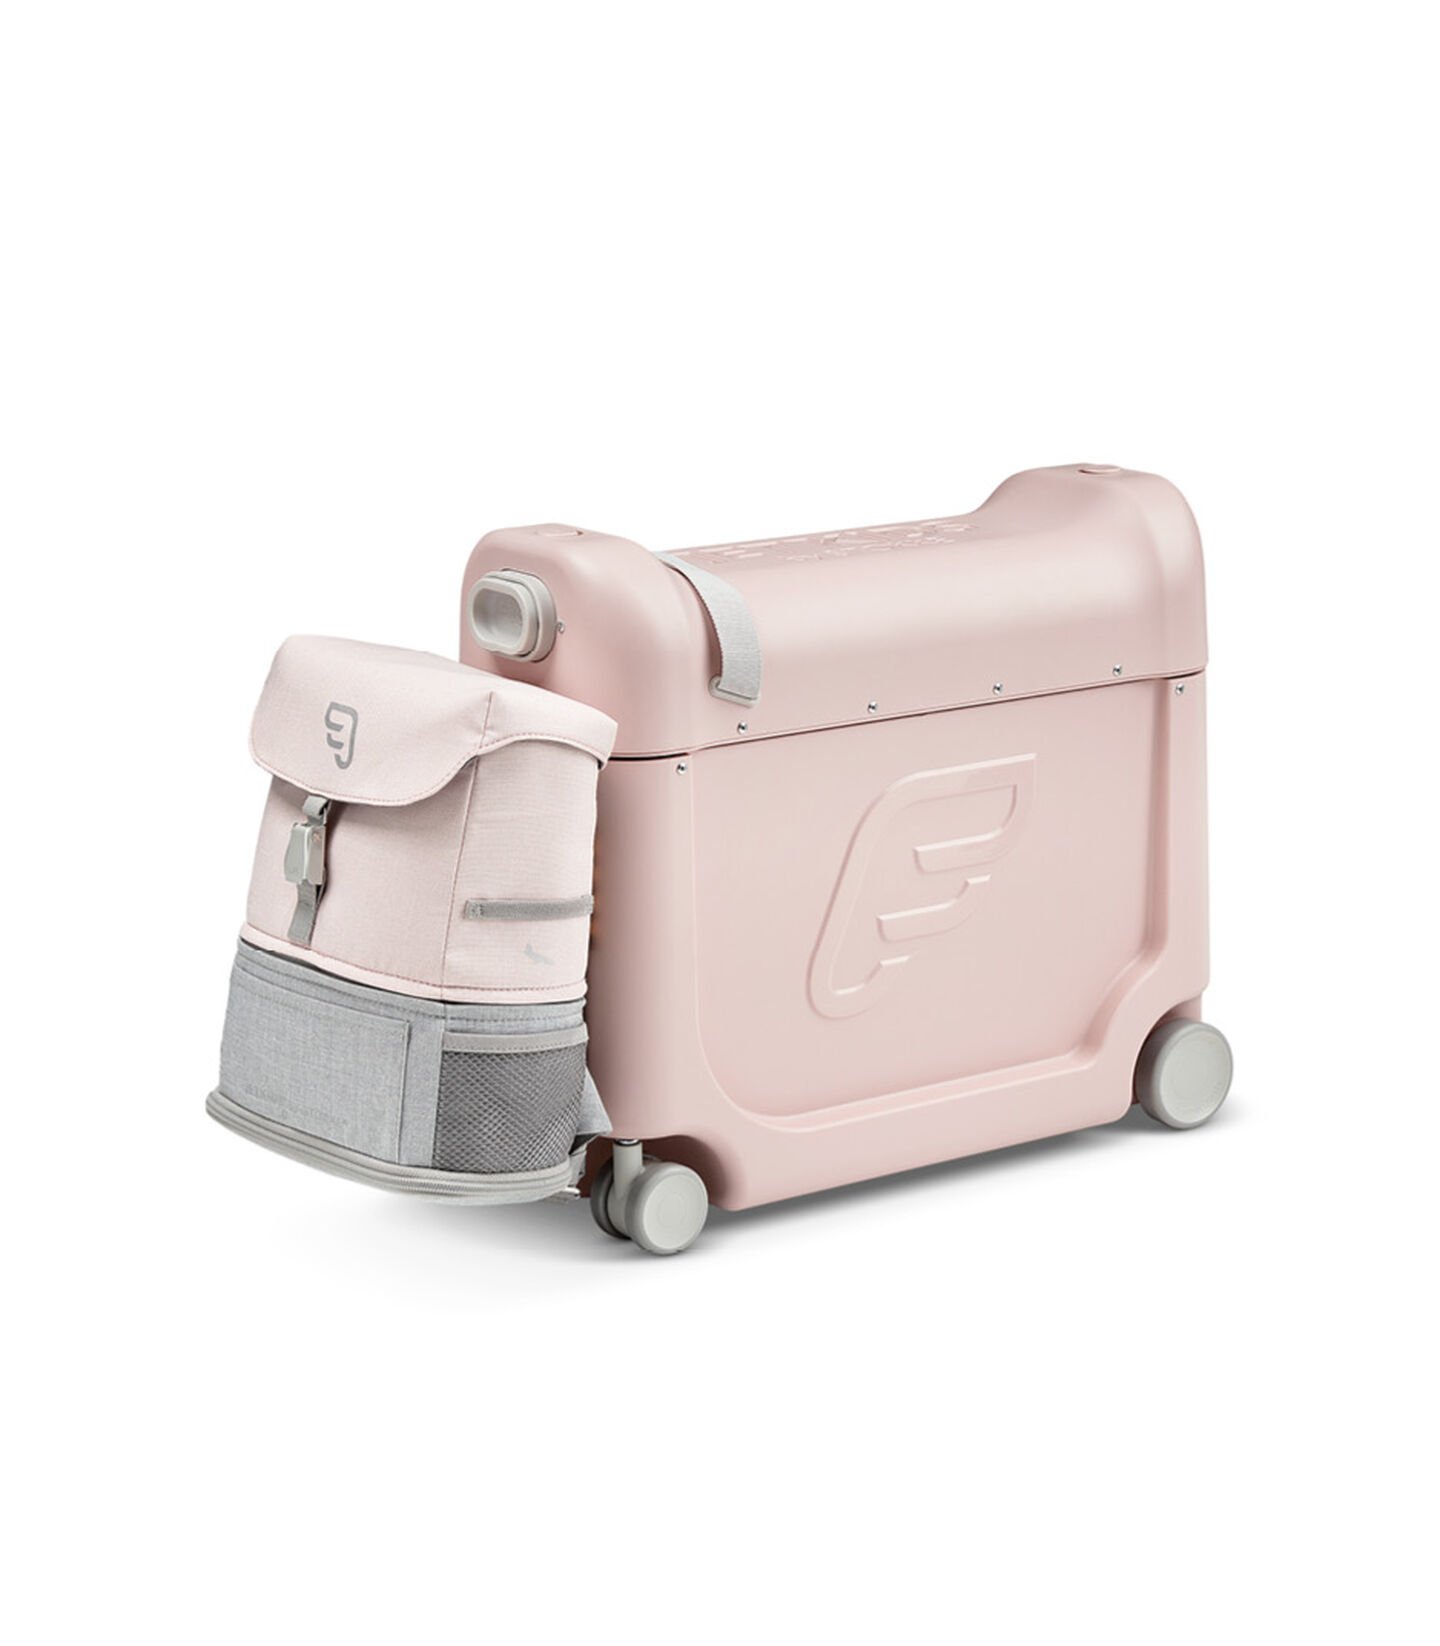 Zestaw podróżny BedBox™ + plecak Crew BackPack™ Różowy/Różowy, Pink / Pink, mainview view 3